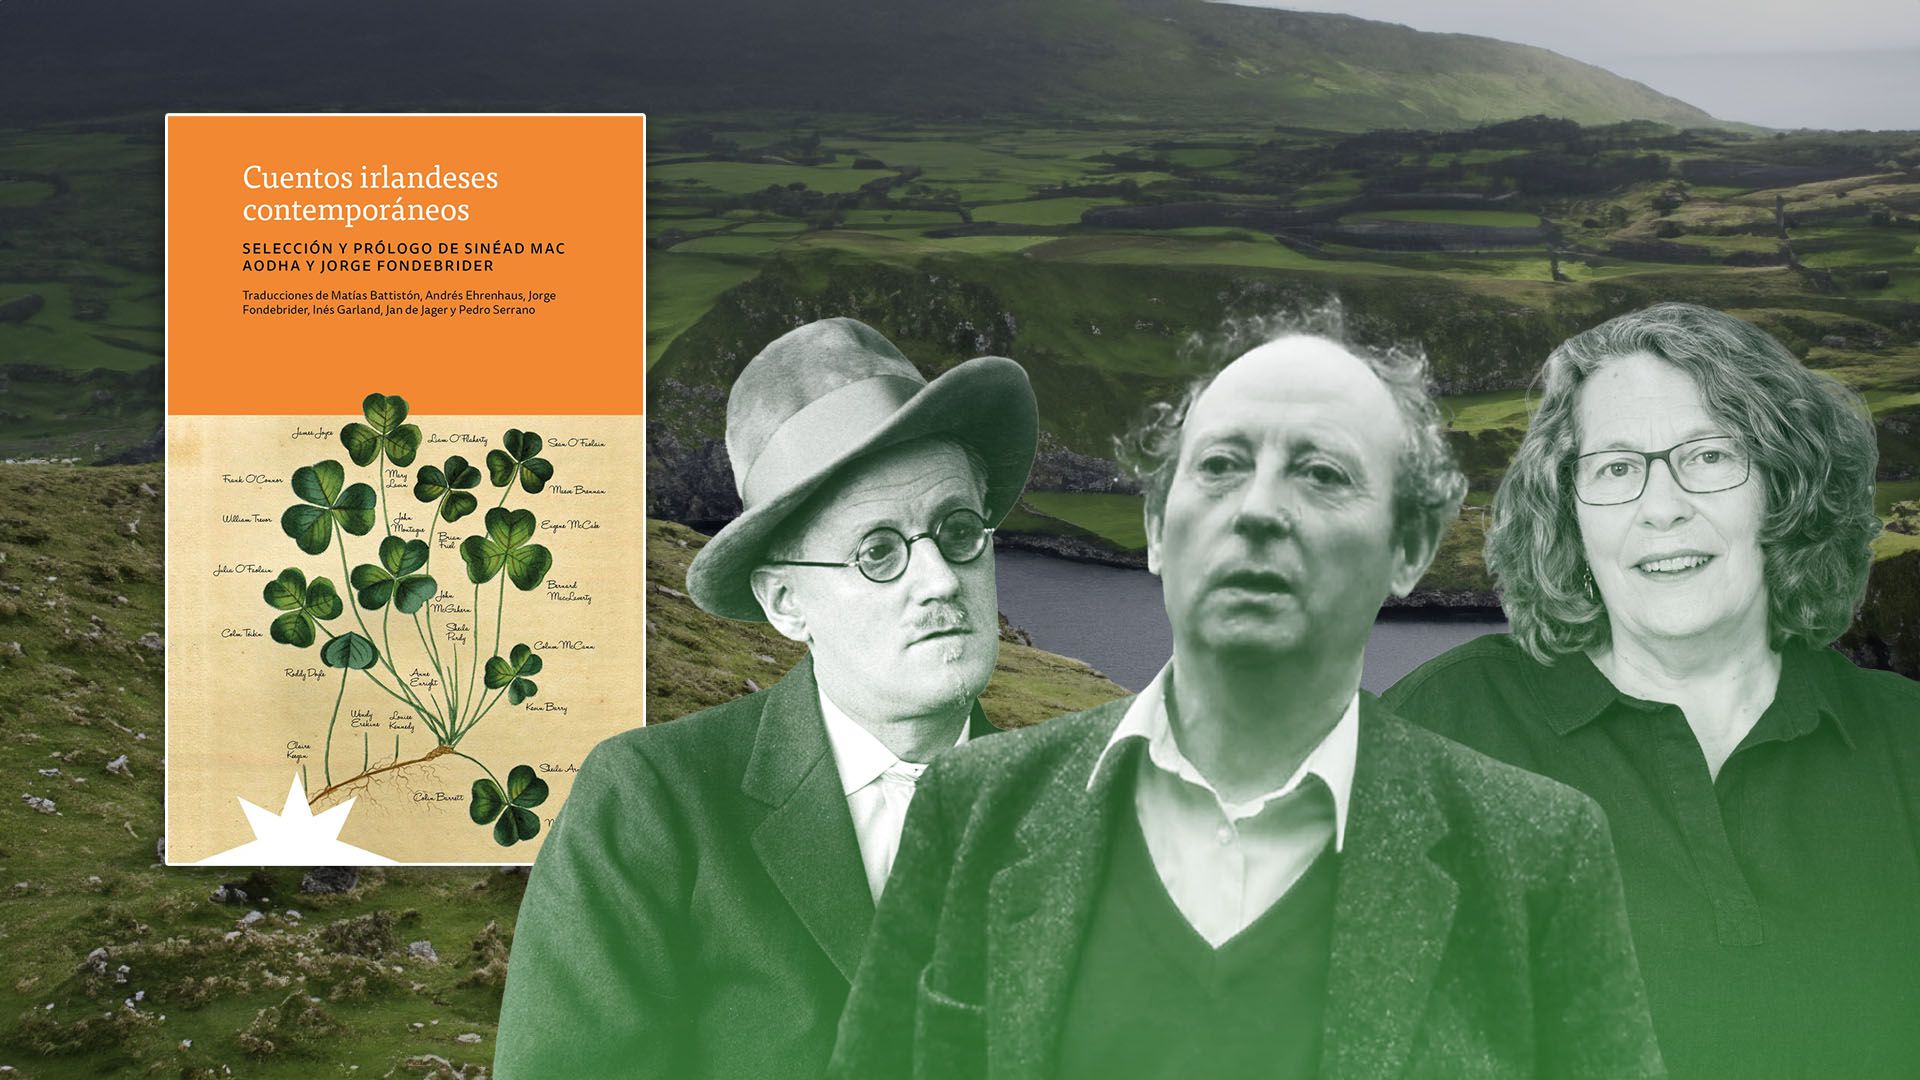 James Joyce, John McGahern, Sheila Purdy y el libro "Cuentos irlandeses contemporáneos".